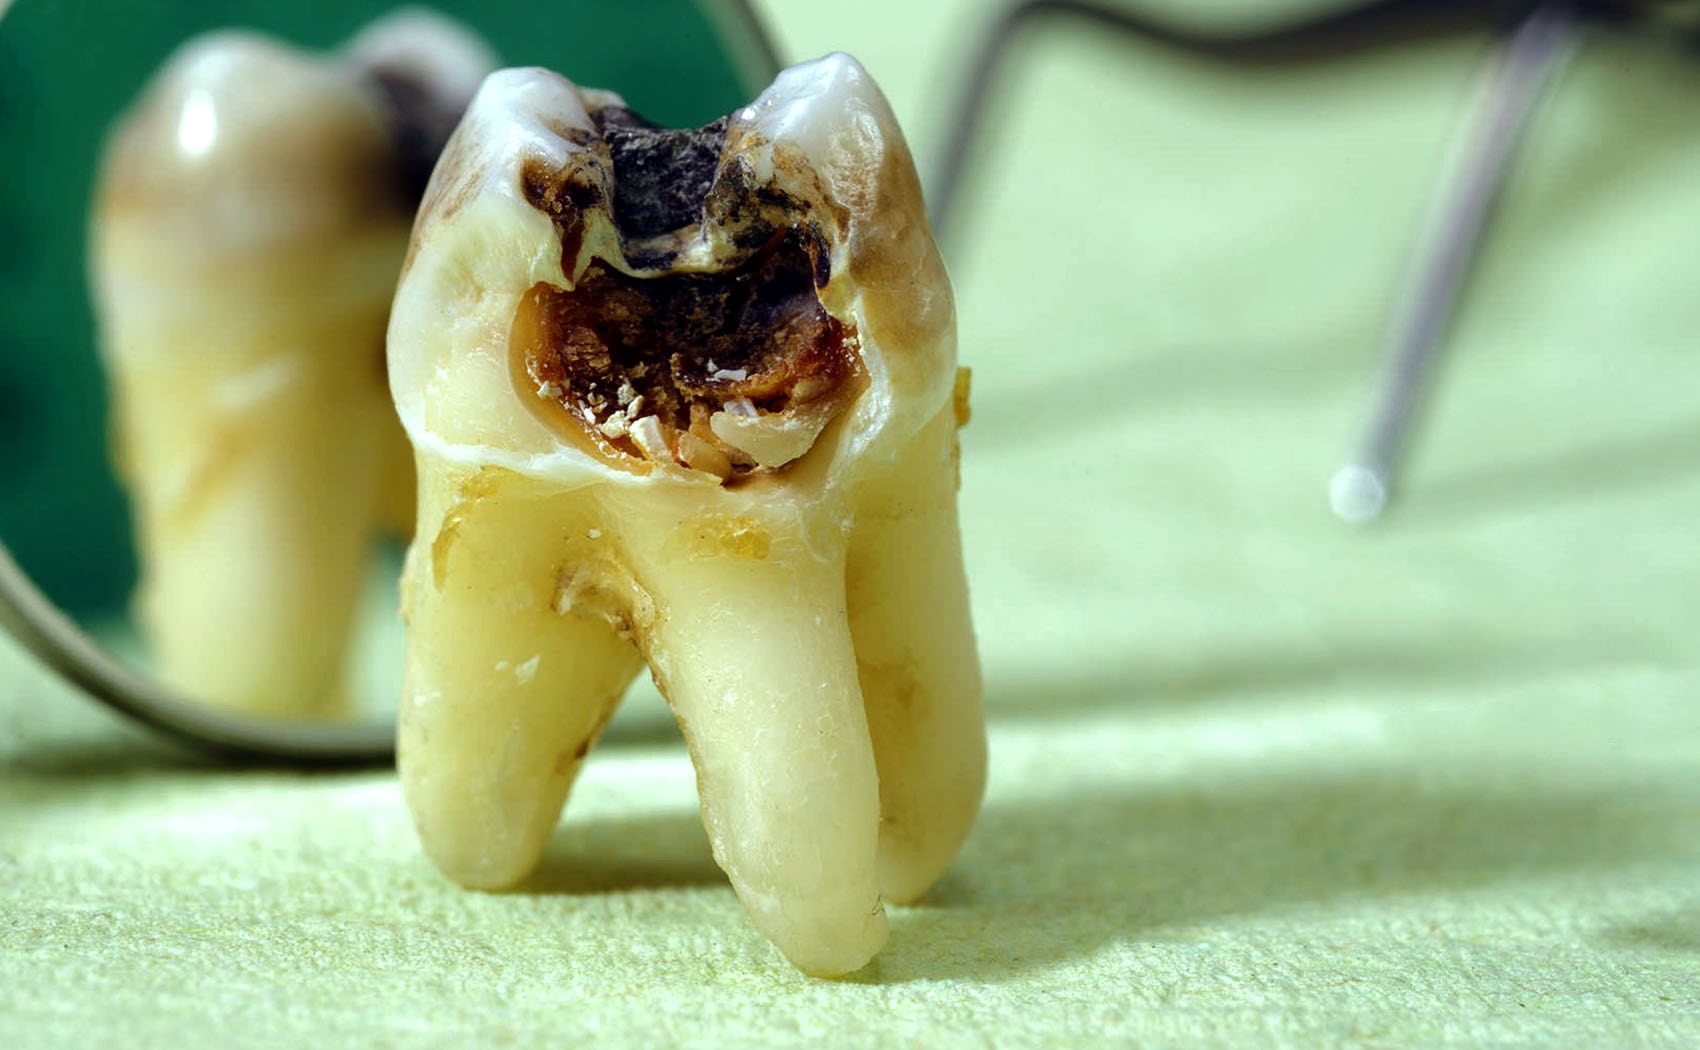  آیا پوسیدگی دندان، خطری برای قلب محسوب می شود؟